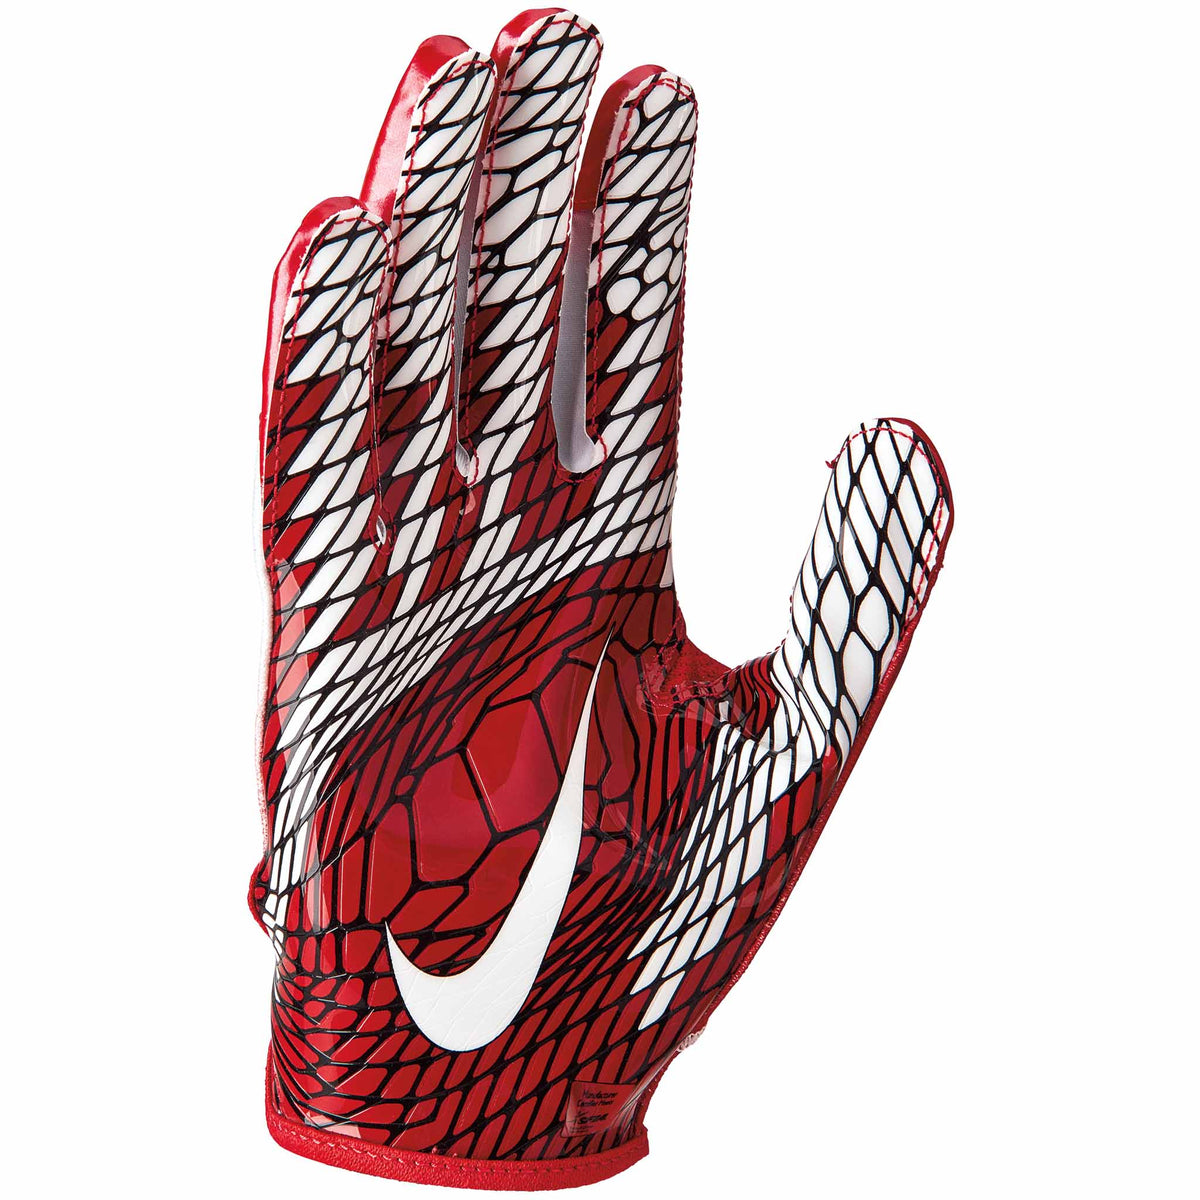 Nike Vapor Knit 2.0 gants de football -Red / White